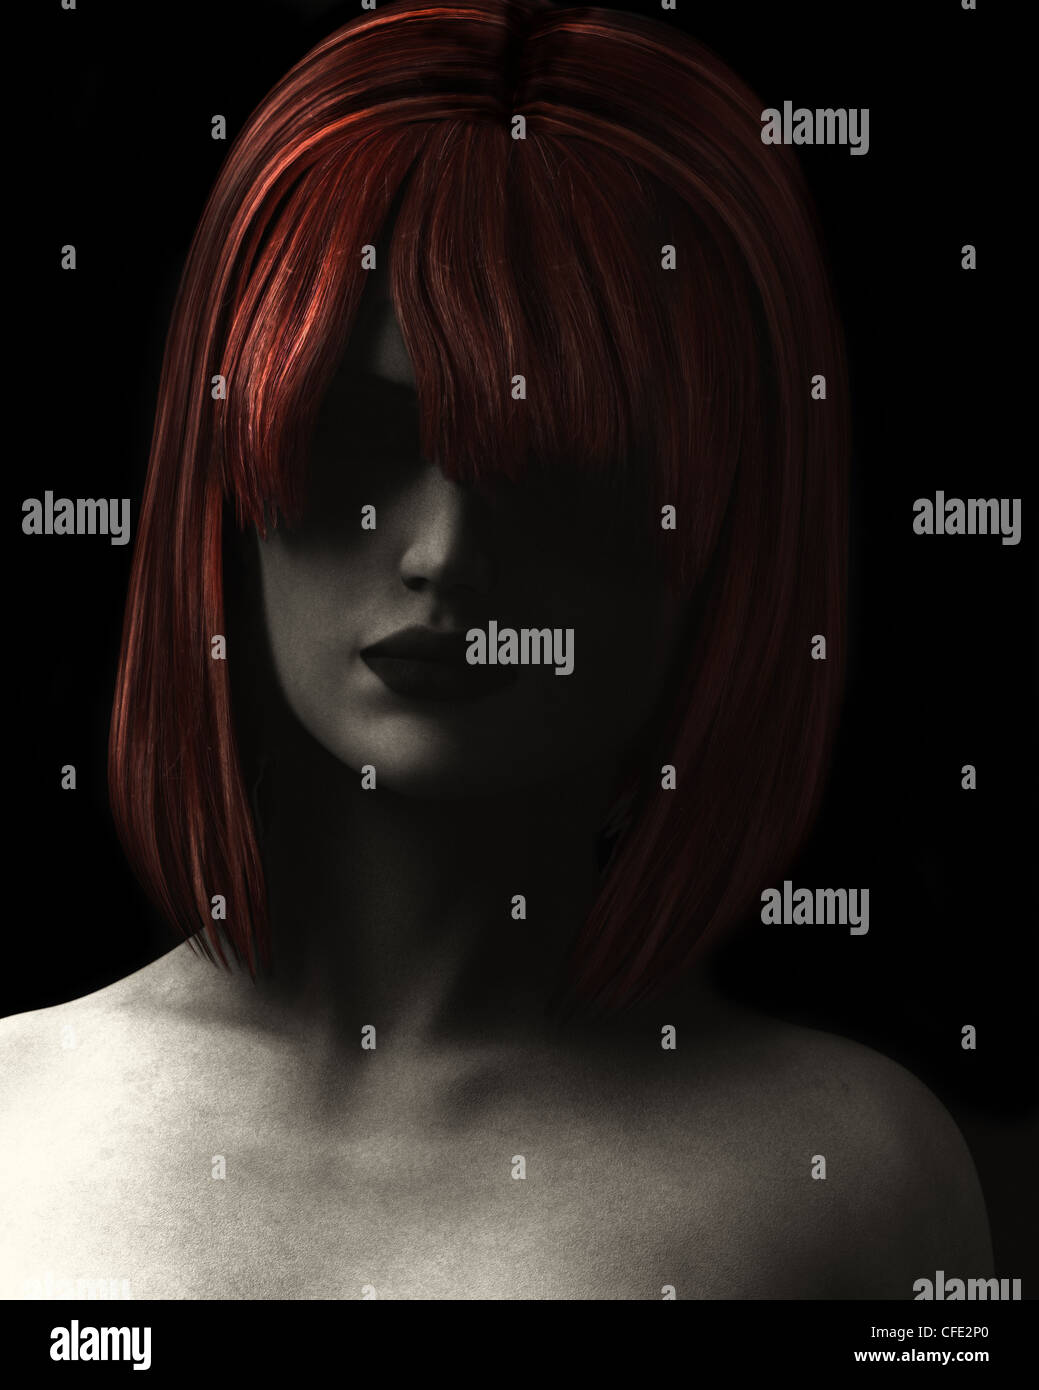 Estilo Arte ilustración digital y con textura granulada de la hermosa mujer de sombra profunda con el pelo rojo. Foto de stock